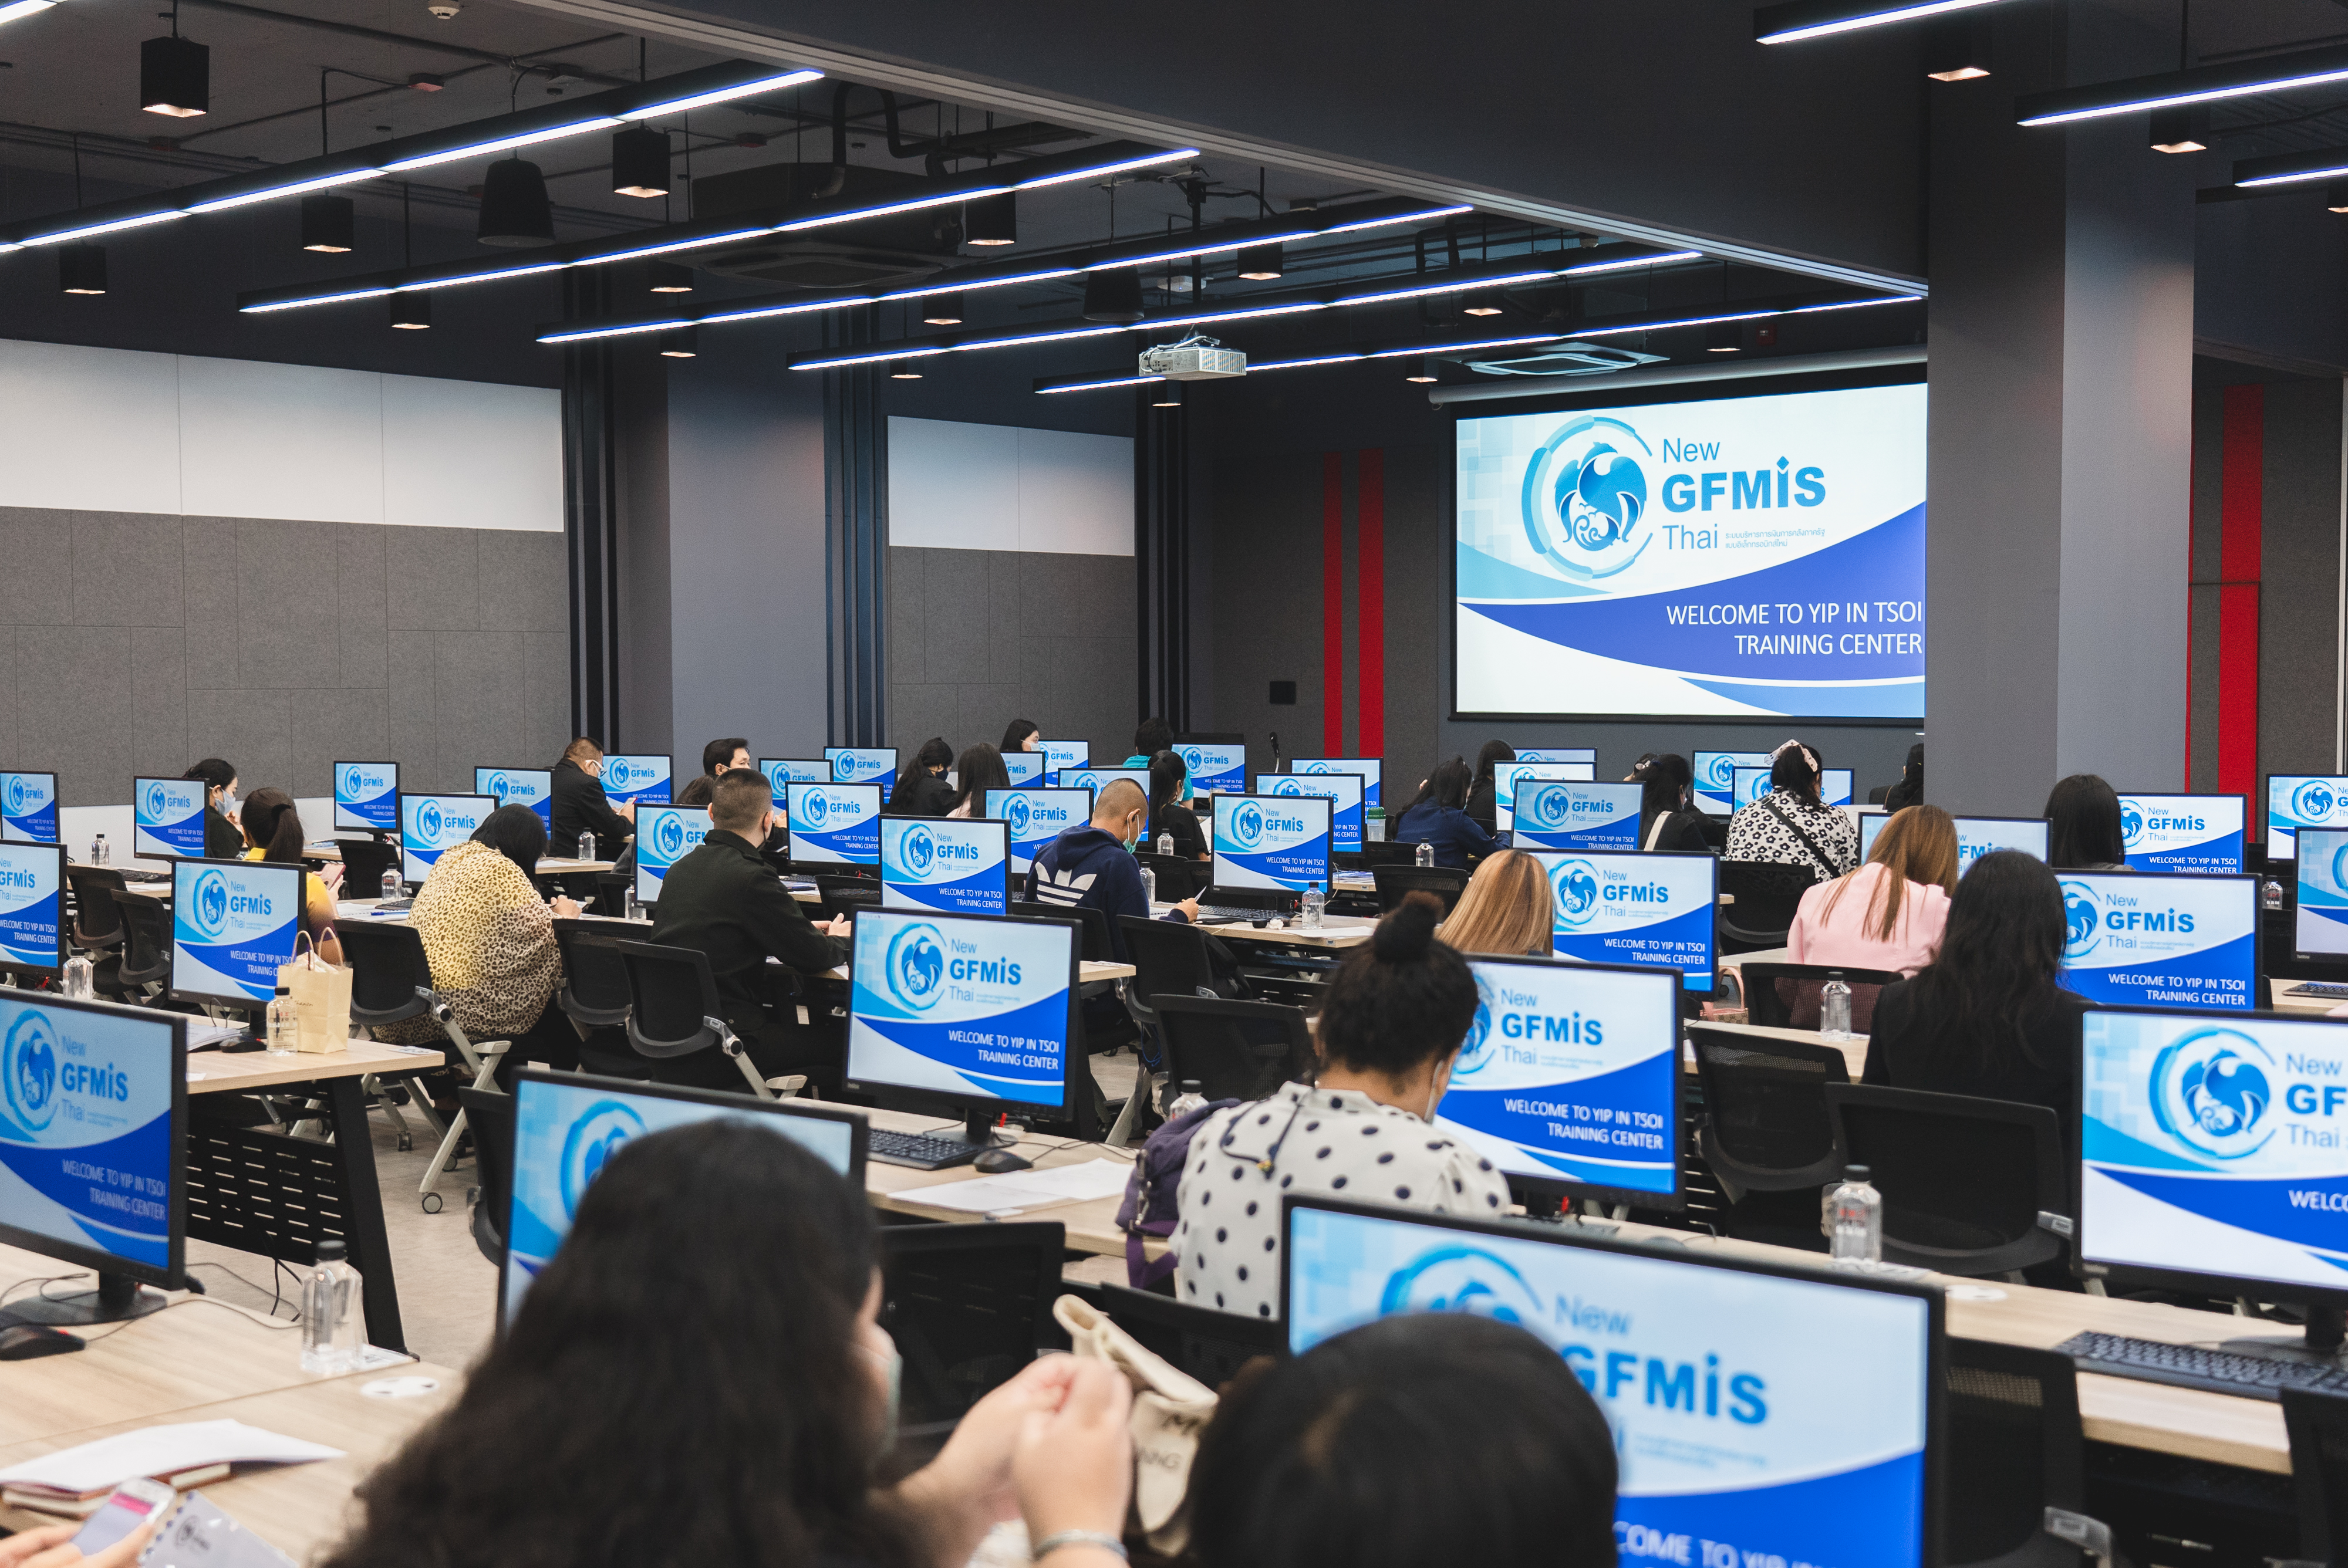 โครงการจัดทำระบบบริหารการเงินการคลังภาครัฐแบบอิเล็กทรอนิกส์ใหม่ (New GFMIS Thai) มีการฝึกอบรมหลักสูตรการใช้งานระบบ New GFMIS Thai สำหรับหน่วยงานระบบกรม (กองคลัง) ของส่วนราชการ รุ่นที่ 1